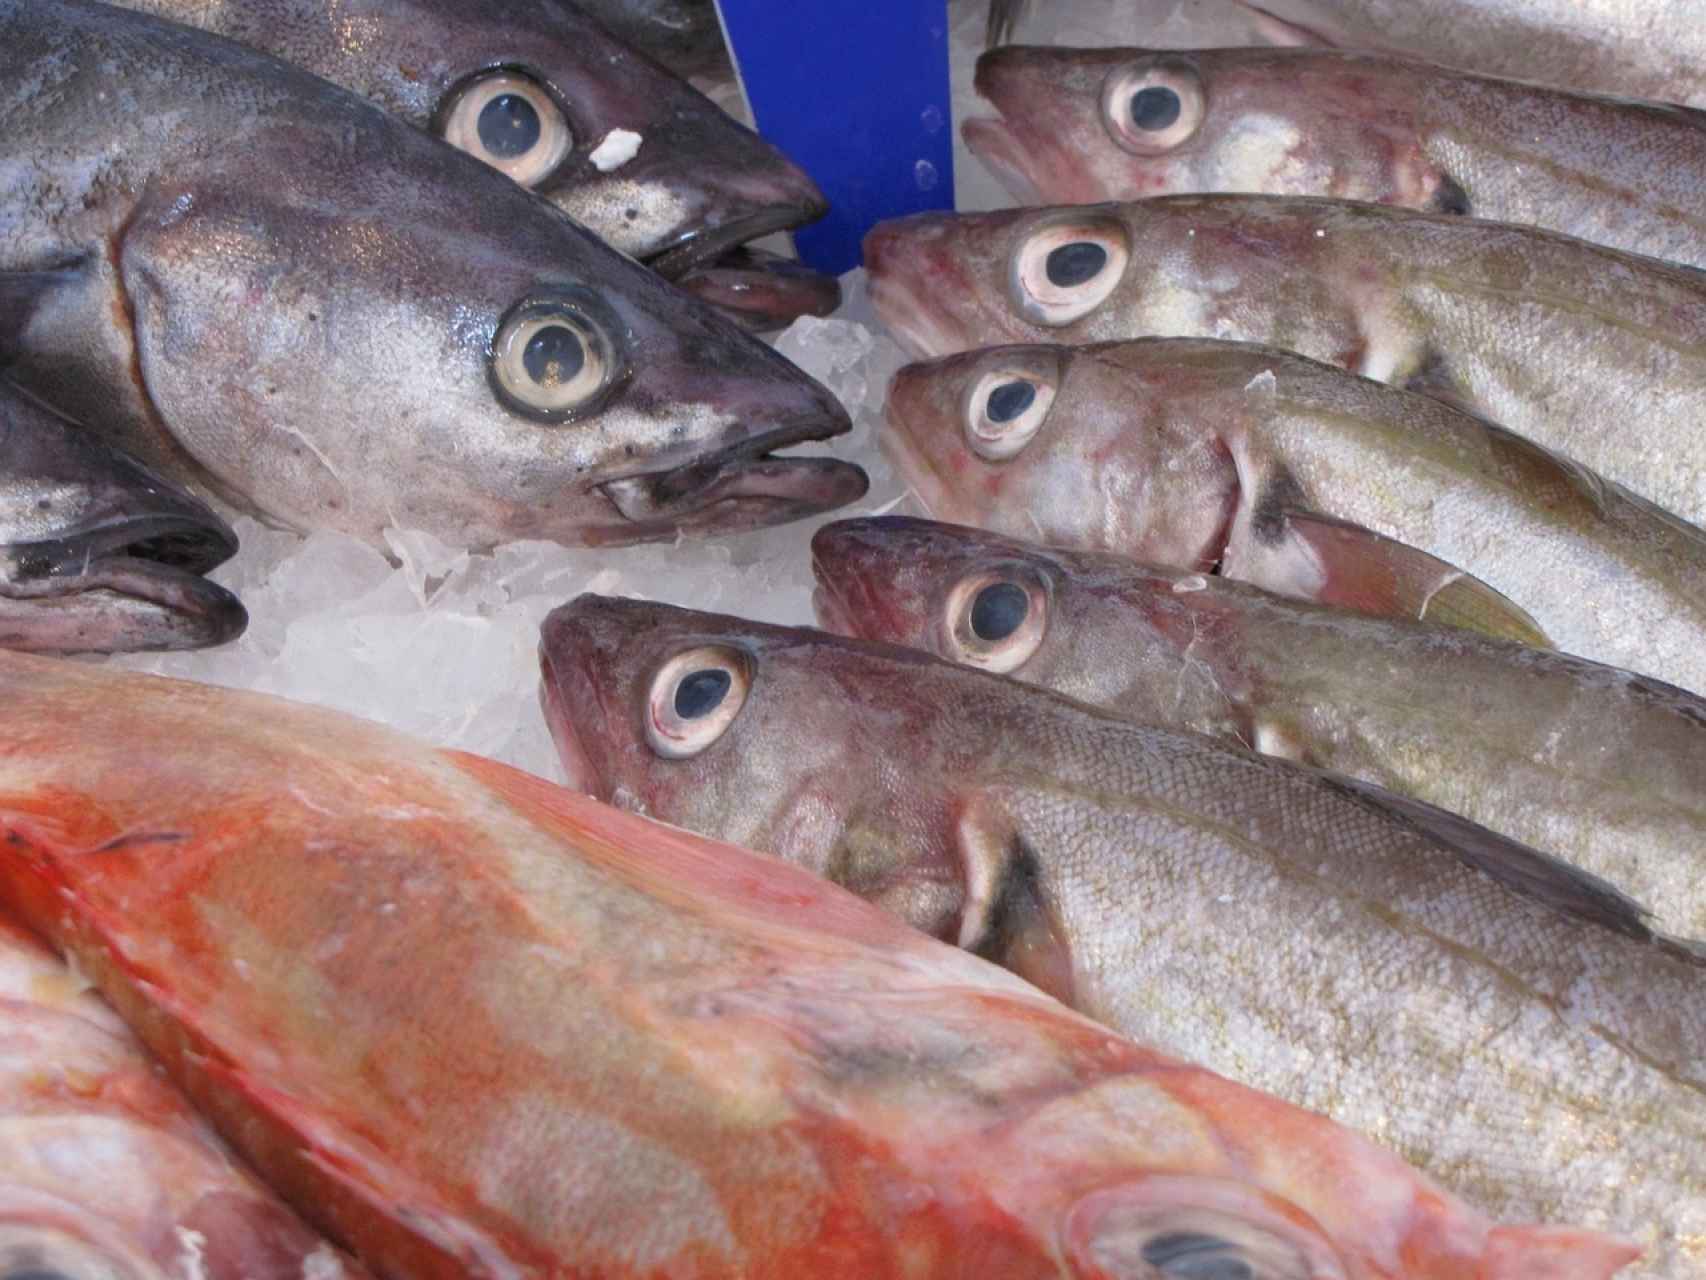 Cómo saber si el pescado es fresco